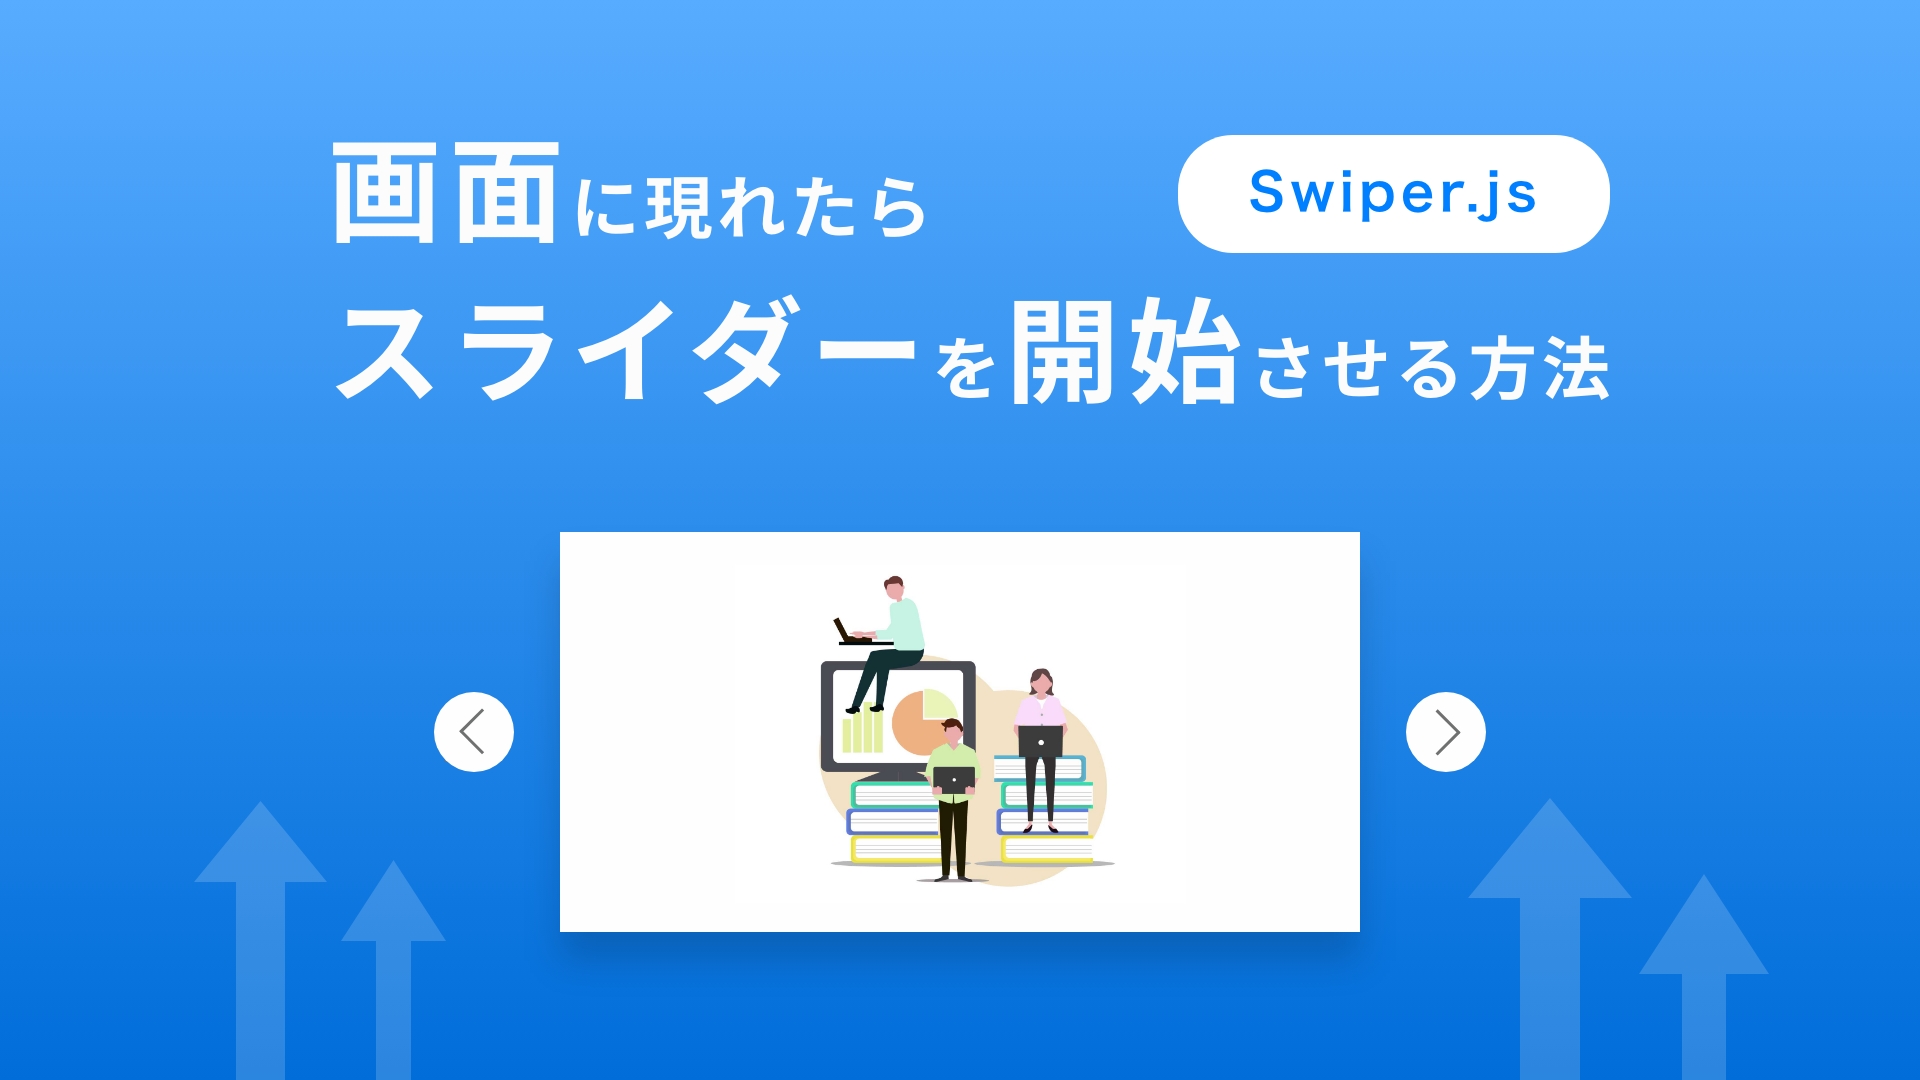 Swiper.js｜画面に現れたらスライダーを開始させる方法